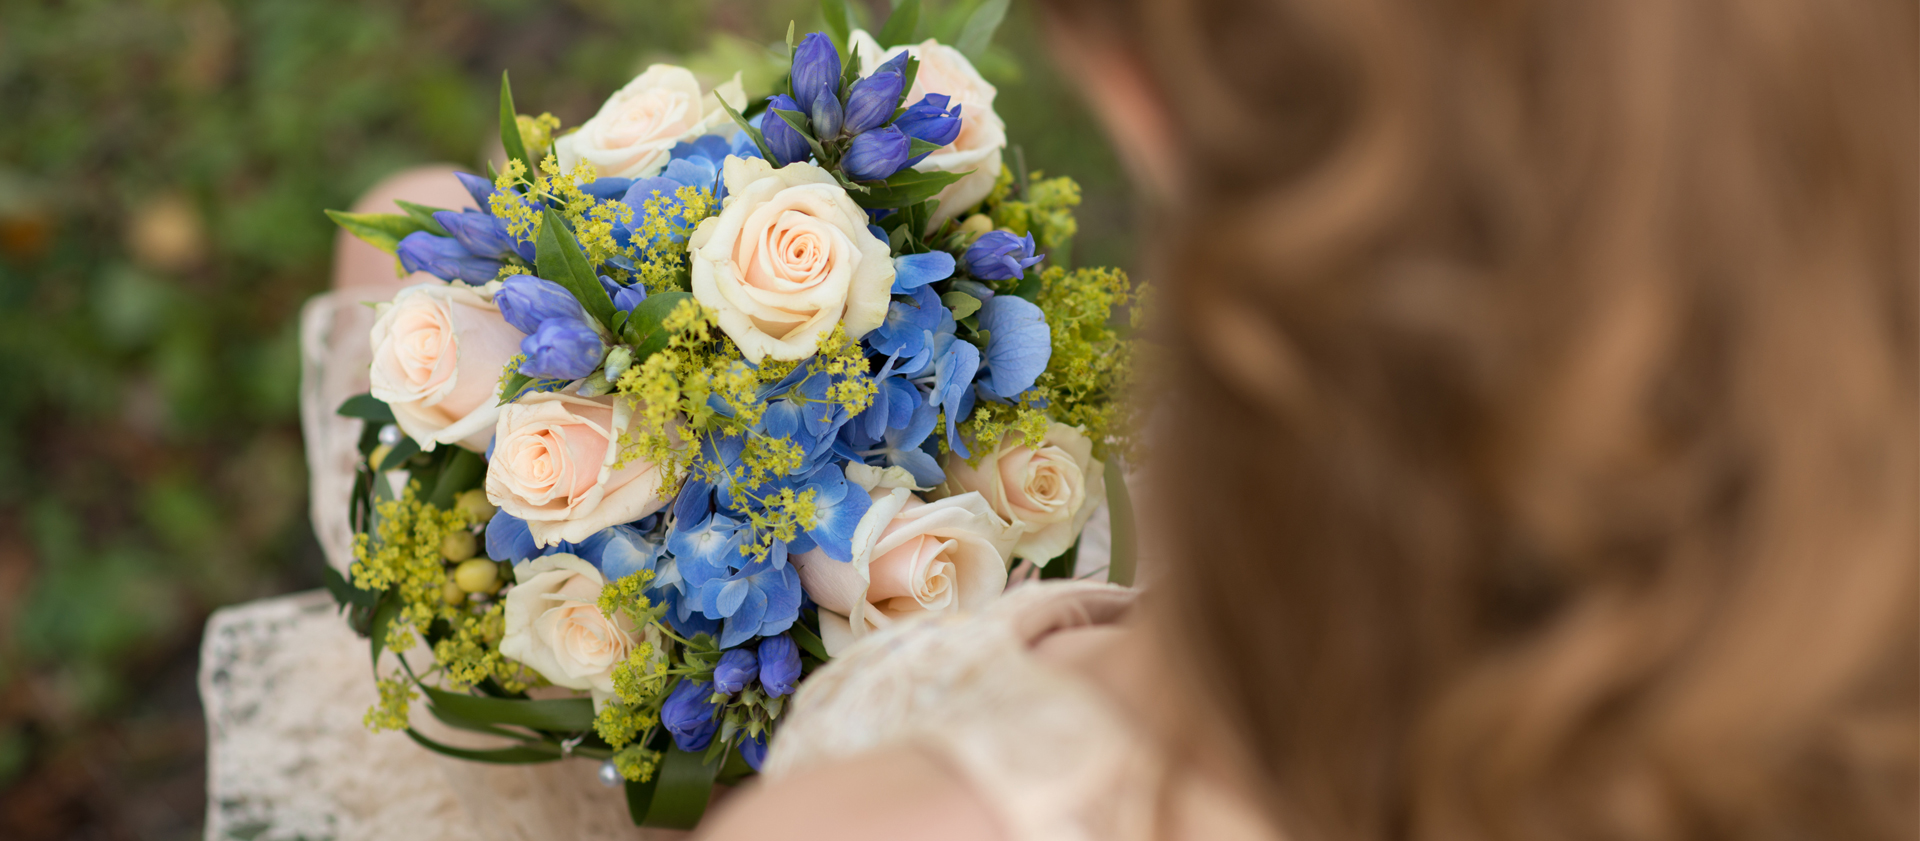 Eine Braut hällt ihren beige-blauen Hochzeitsstrauss im Arm